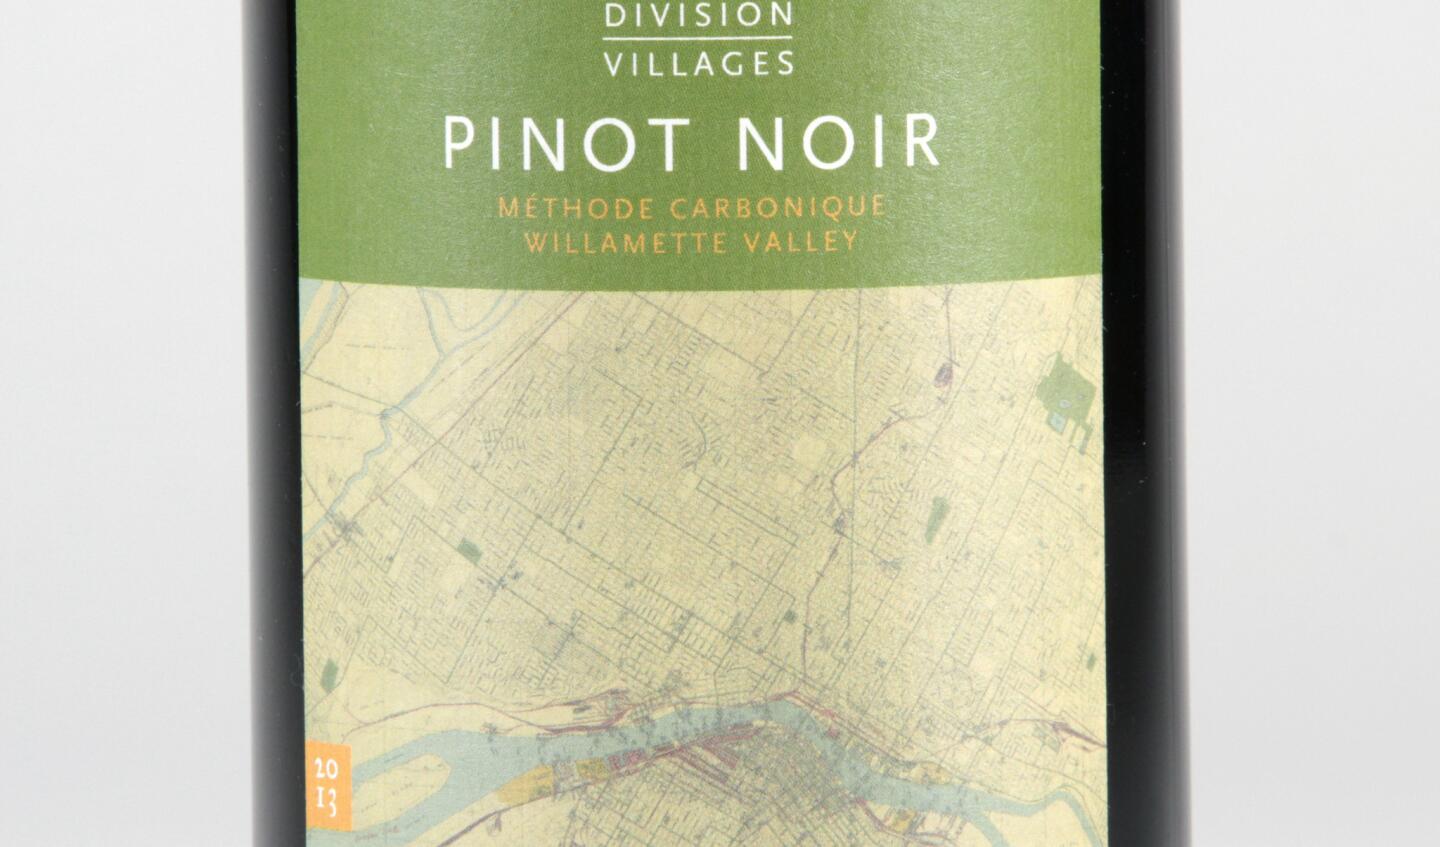 2013 Division Villages Pinot Noir